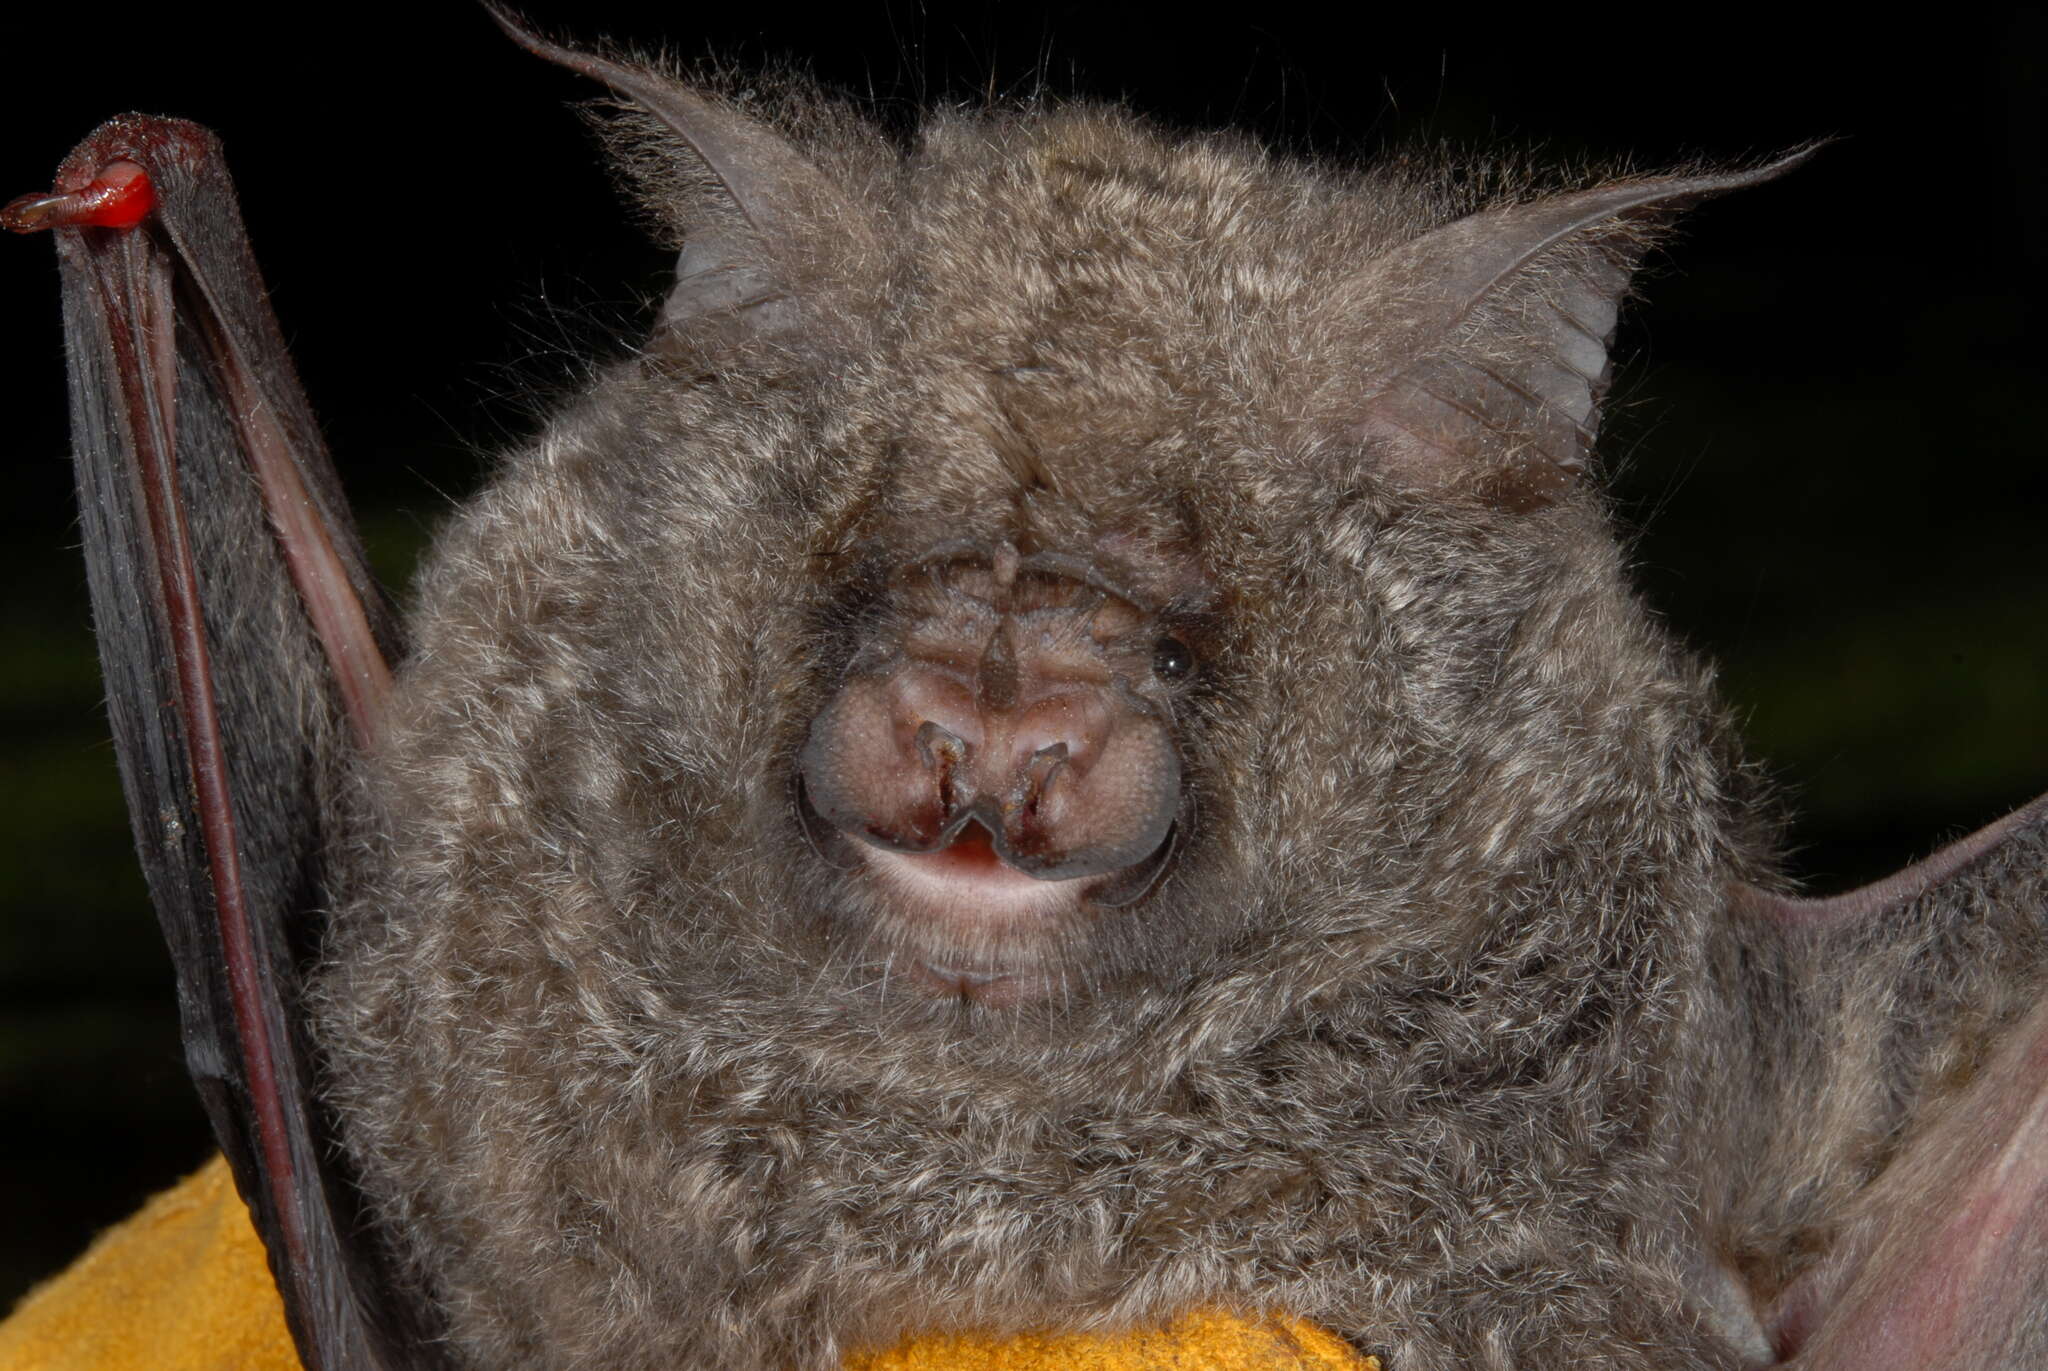 Image of Cameroon Leaf-nosed Bat